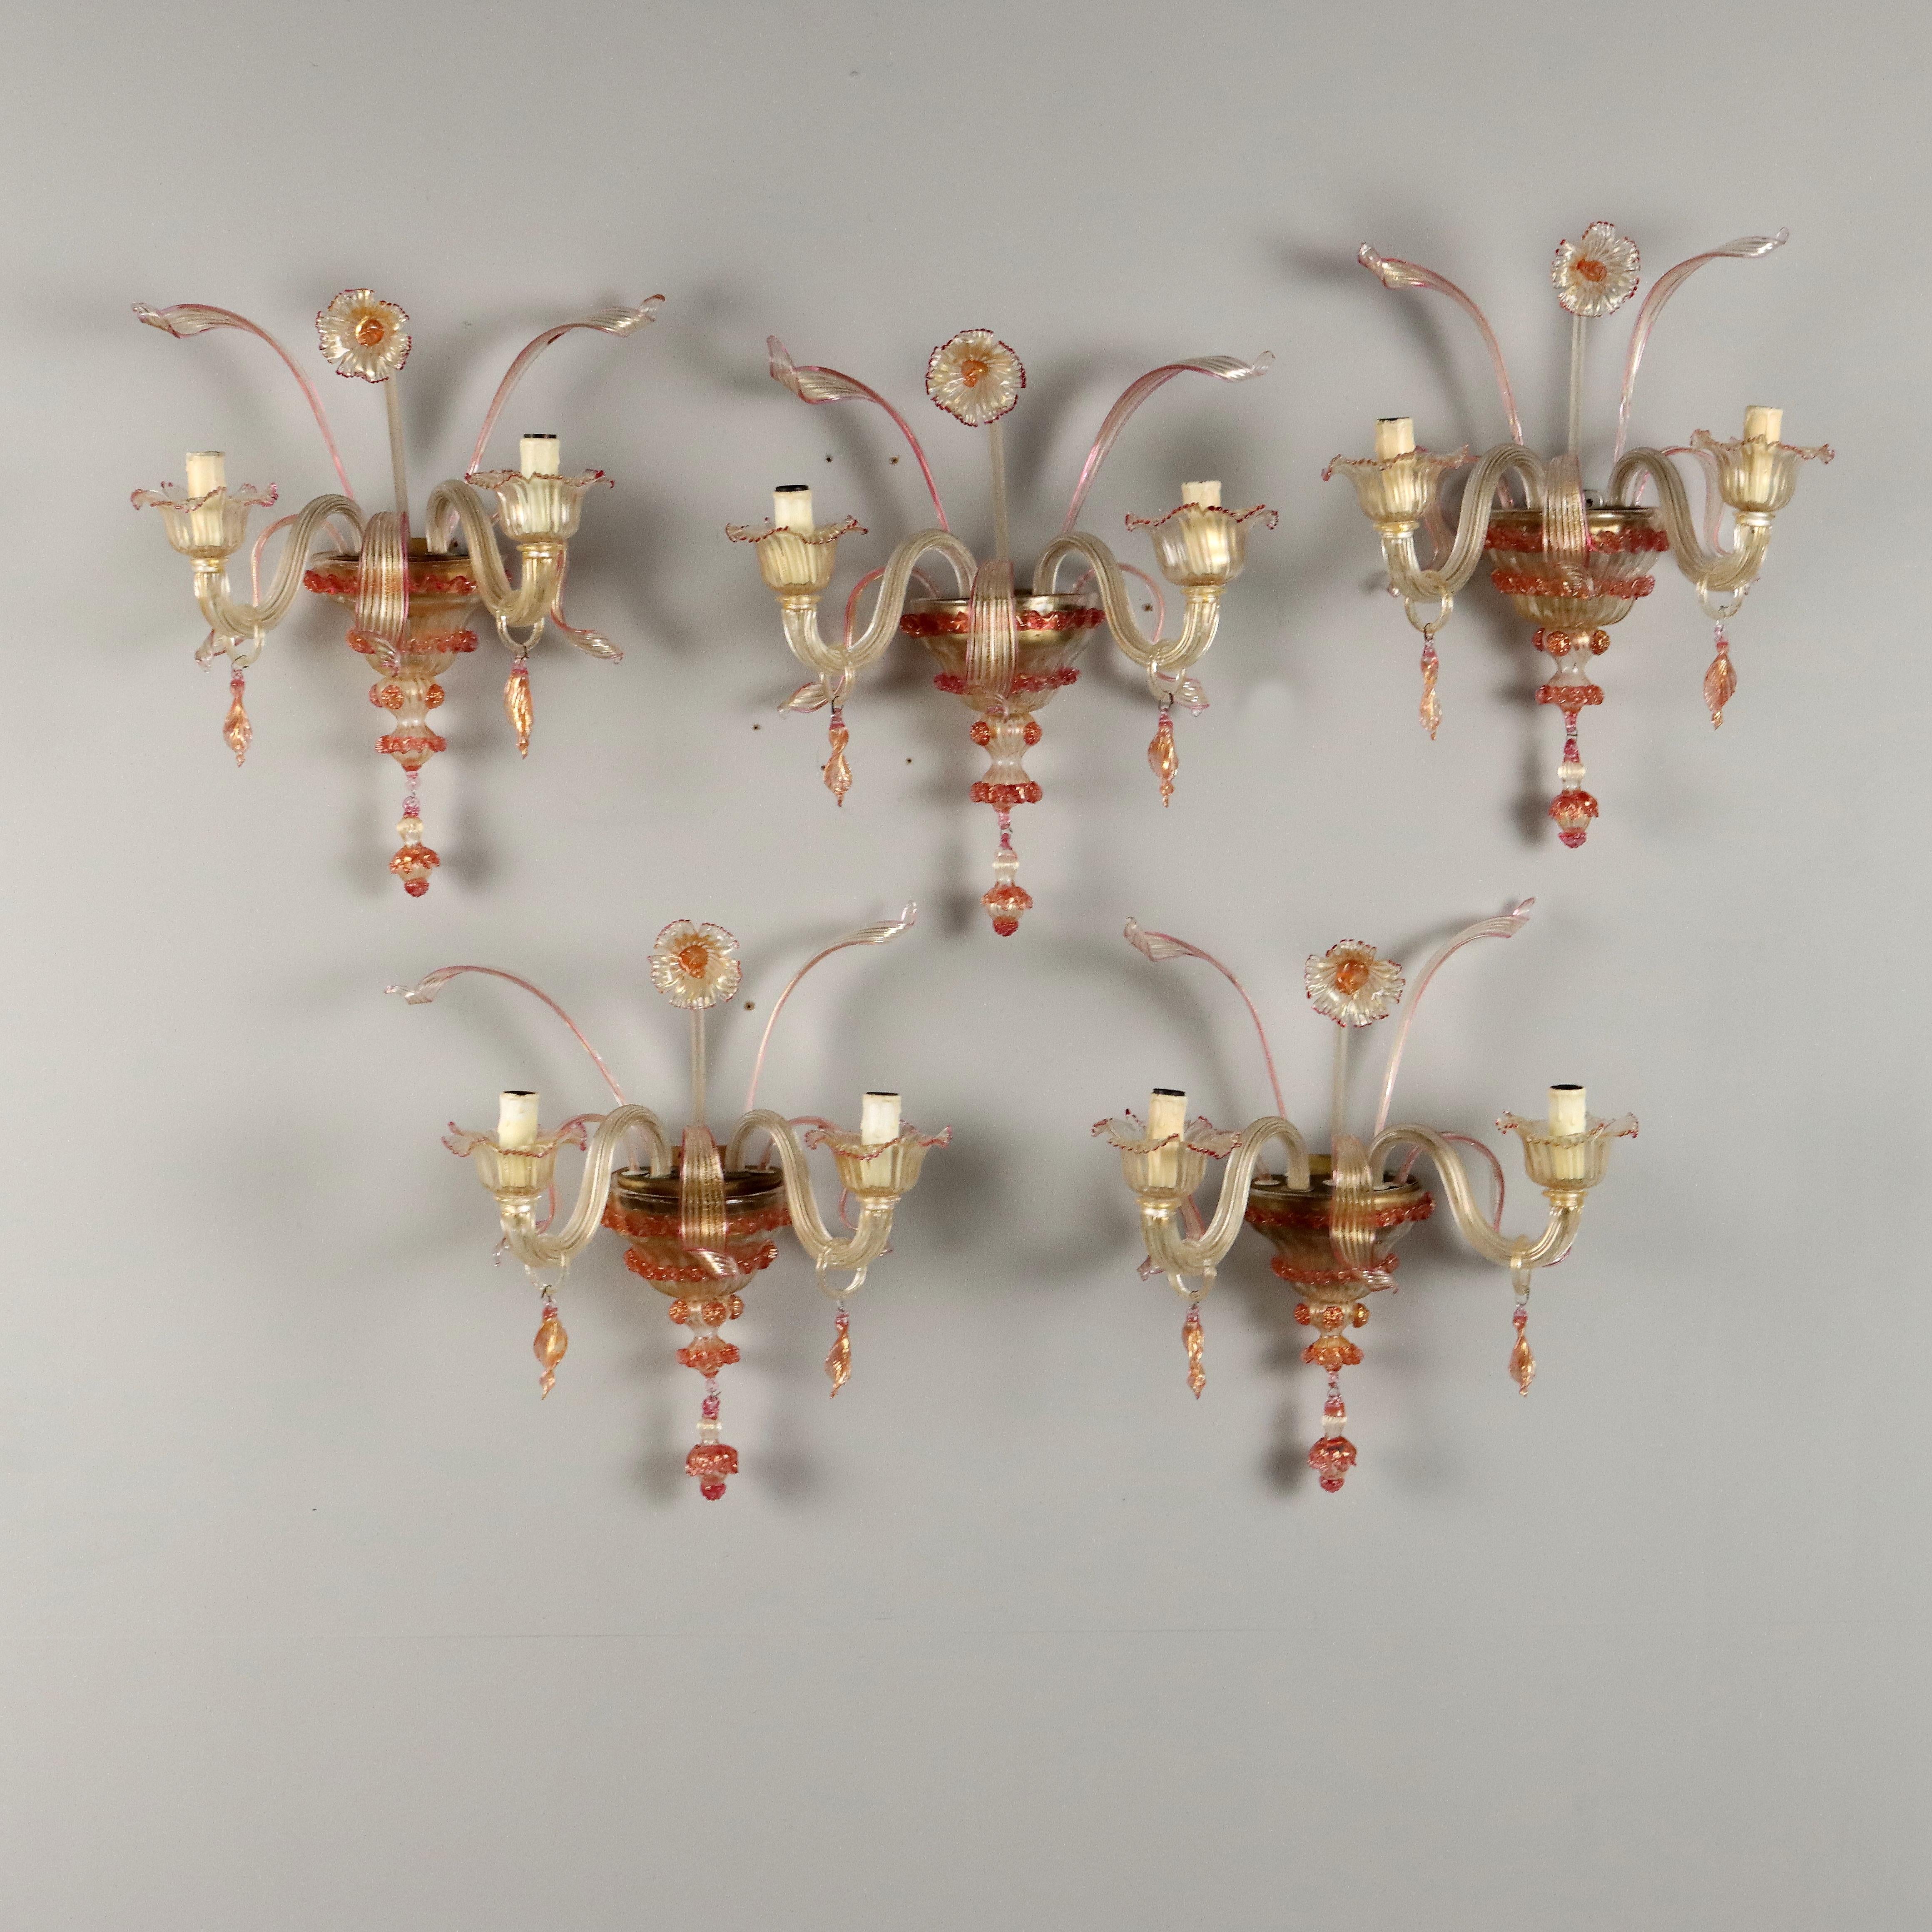 Gruppo di cinque applique a due luci in vetro soffiato di Murano, XX secolo. Decorazione composta da fiore, foglie e pendenti. Una delle applique presenta piccolo sbecco nella sezione inferiore.